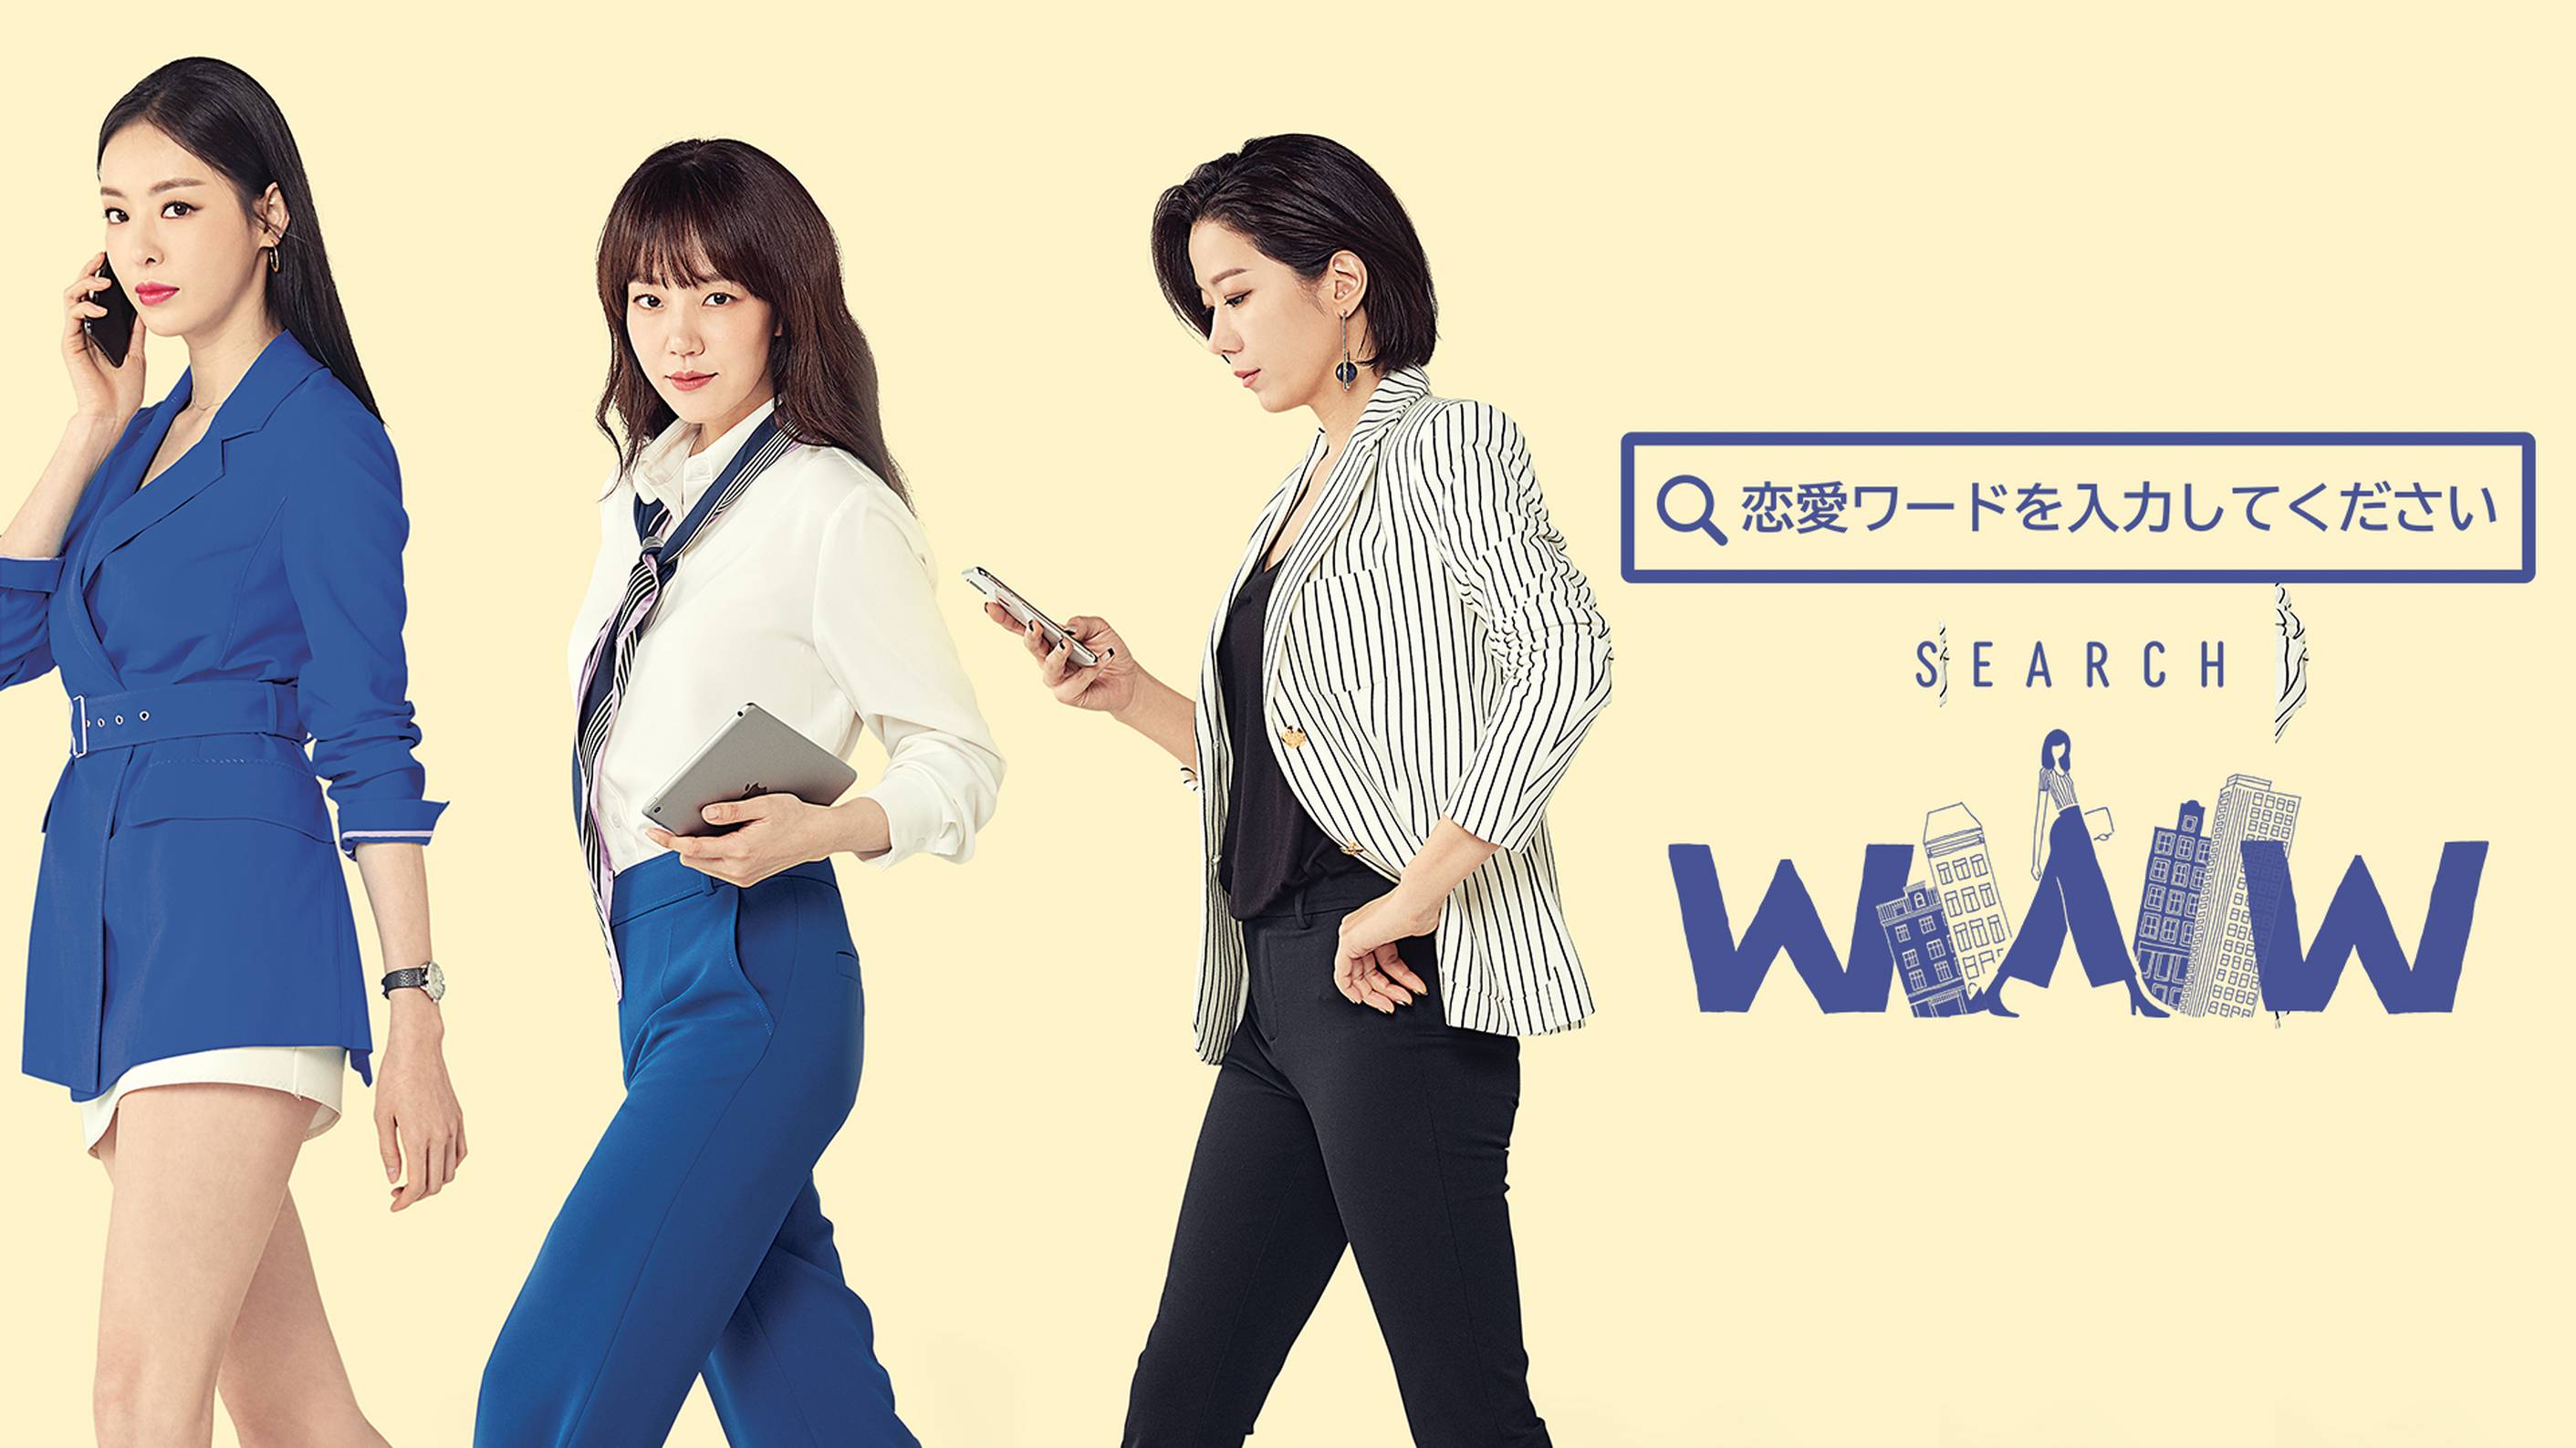 韓国ドラマ『恋愛ワードを入力してください~Search WWW~』の日本語字幕版の動画を全話見れる配信アプリまとめ